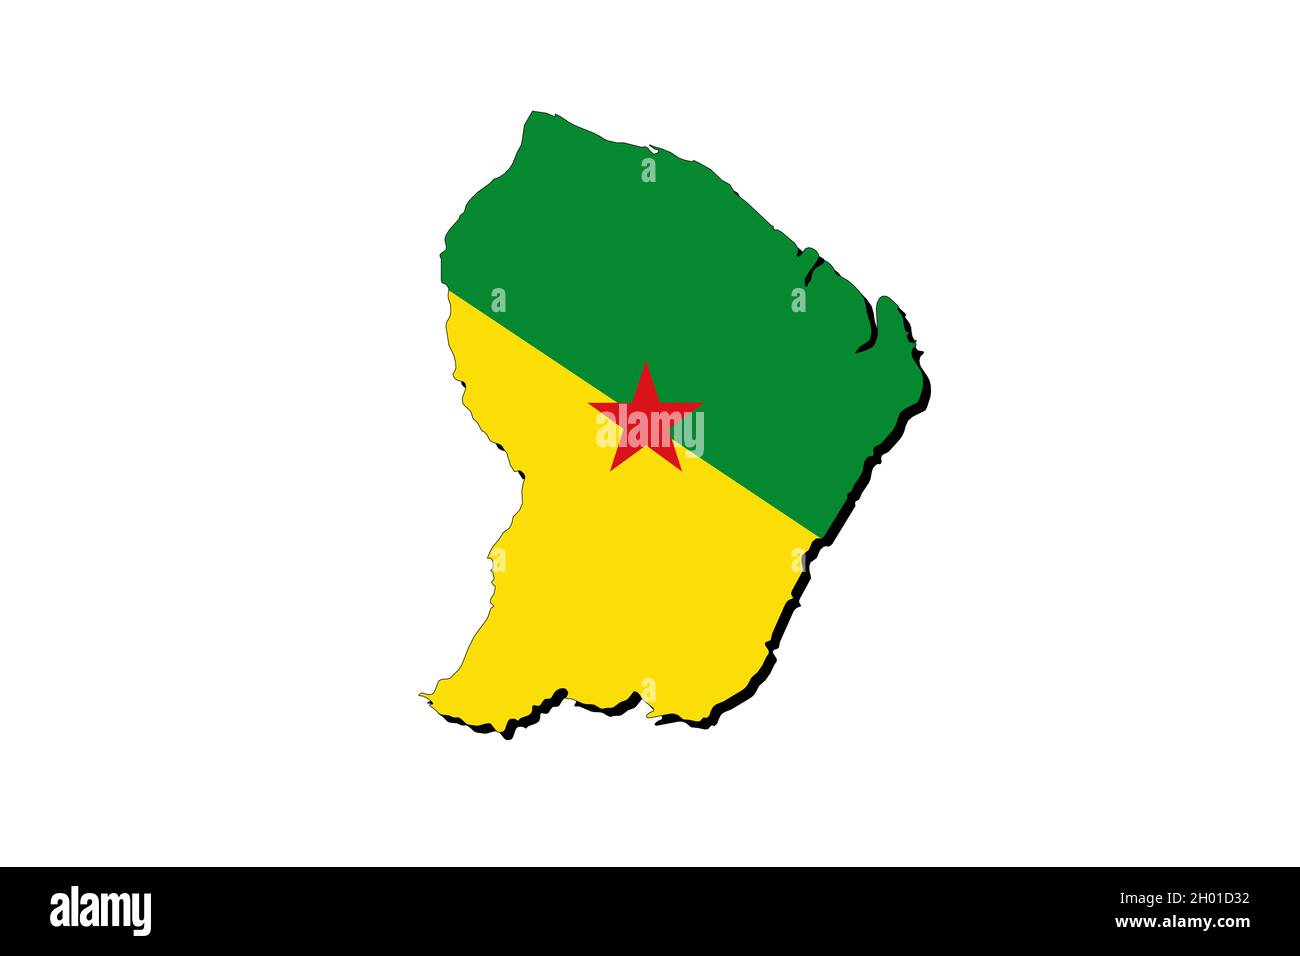 Carte de la Guyane française avec le drapeau national superposé sur le pays.Graphiques 3D projetant une ombre sur l'arrière-plan blanc Banque D'Images